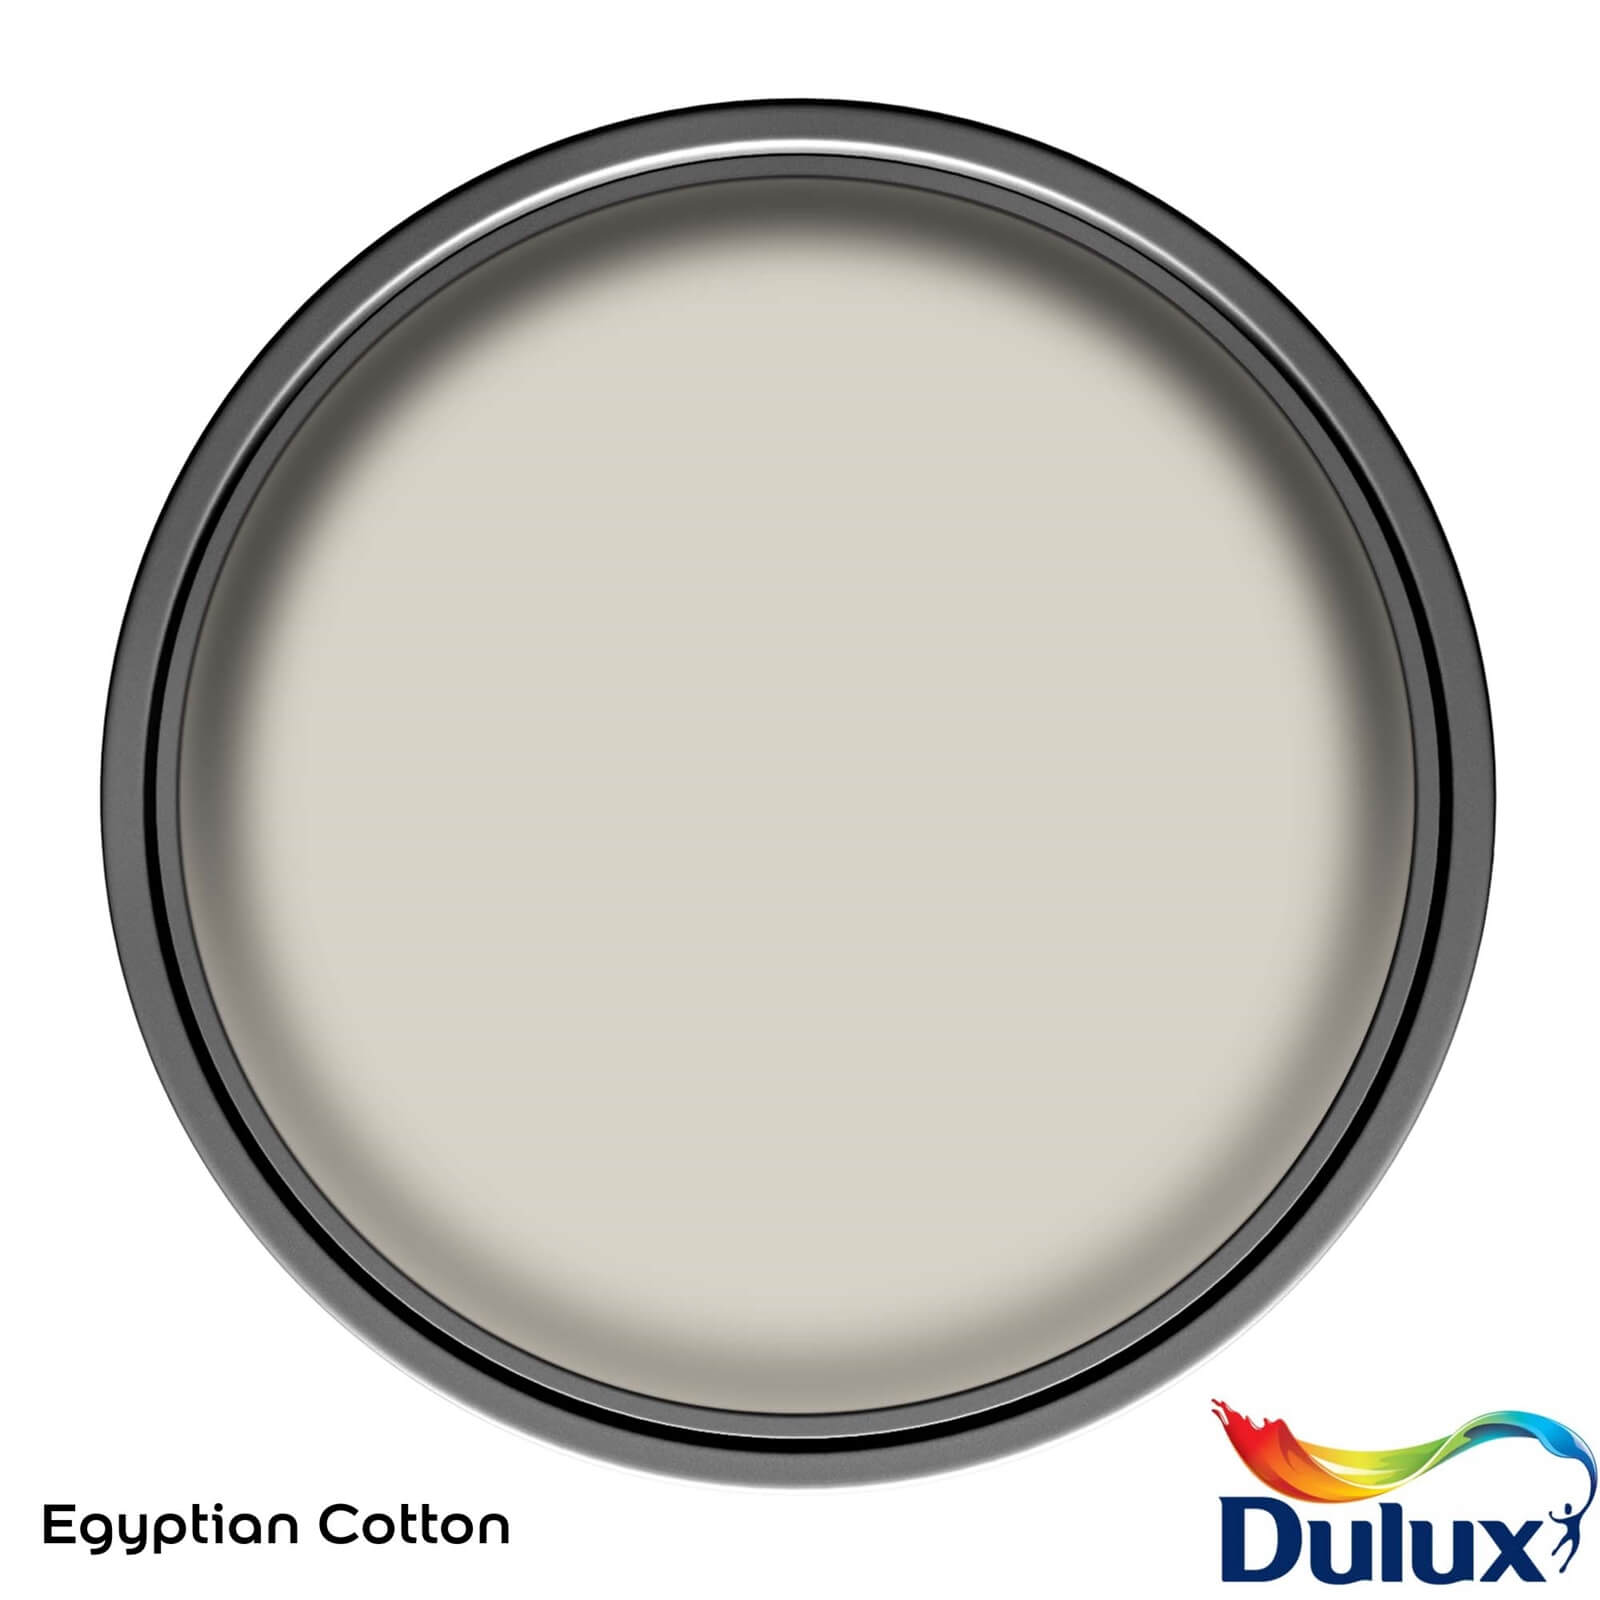 Dulux Easycare Bathroom Soft Sheen Emulsion Paint Egyptian Cotton - 2.5L